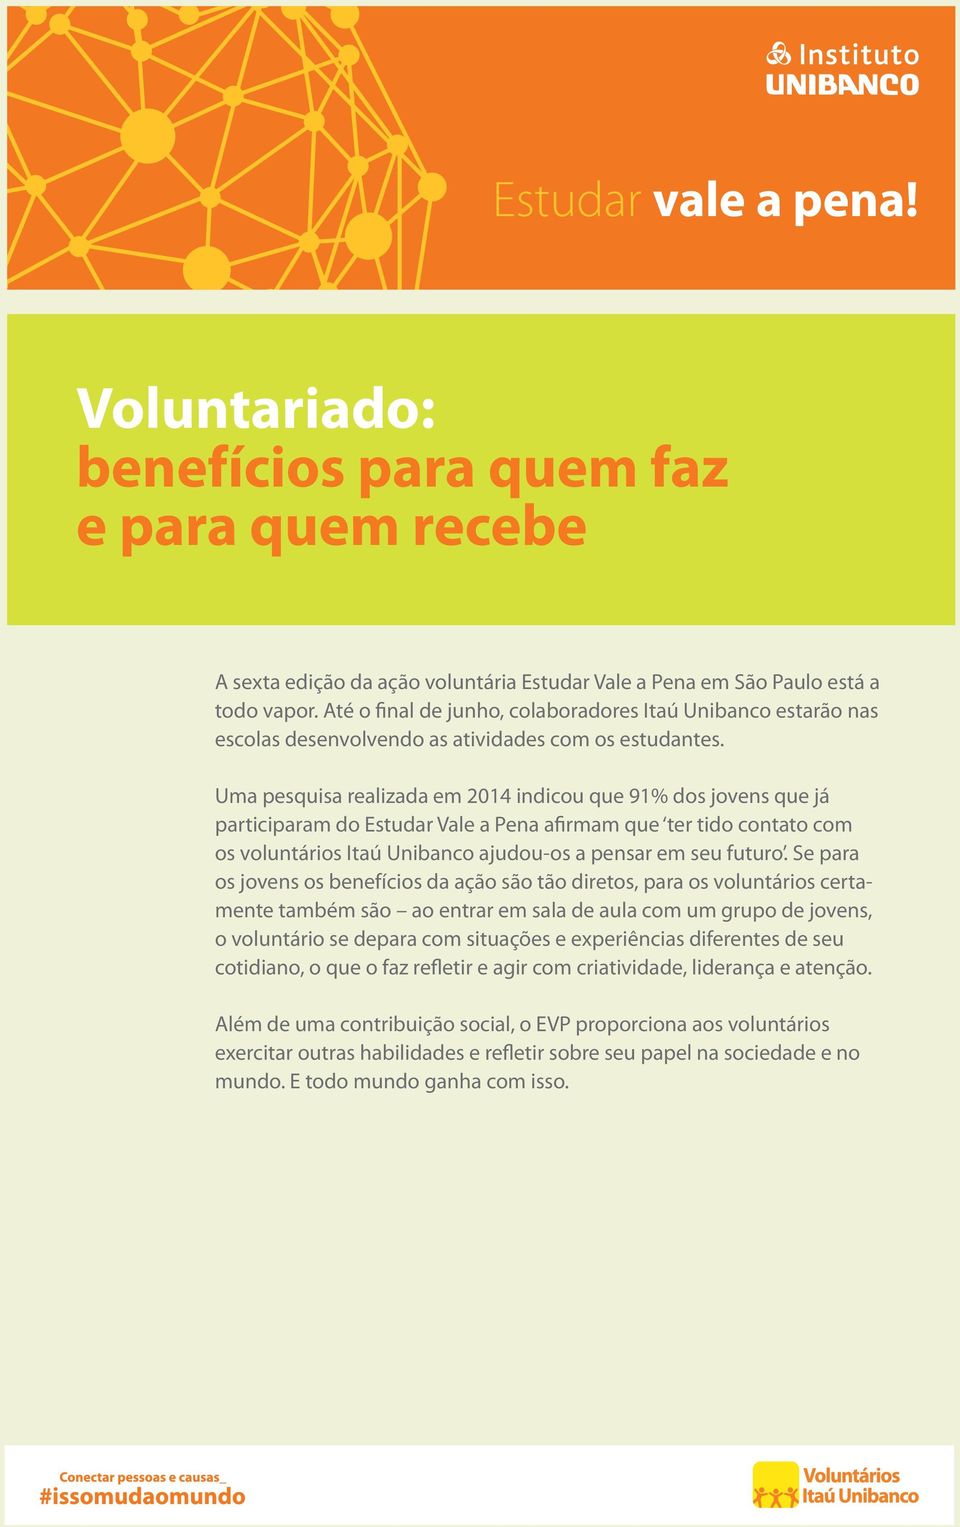 Uma pesquisa realizada em 2014 indicou que 91% dos jovens que já participaram do Estudar Vale a Pena afirmam que ter tido contato com os voluntários Itaú Unibanco ajudou-os a pensar em seu futuro.